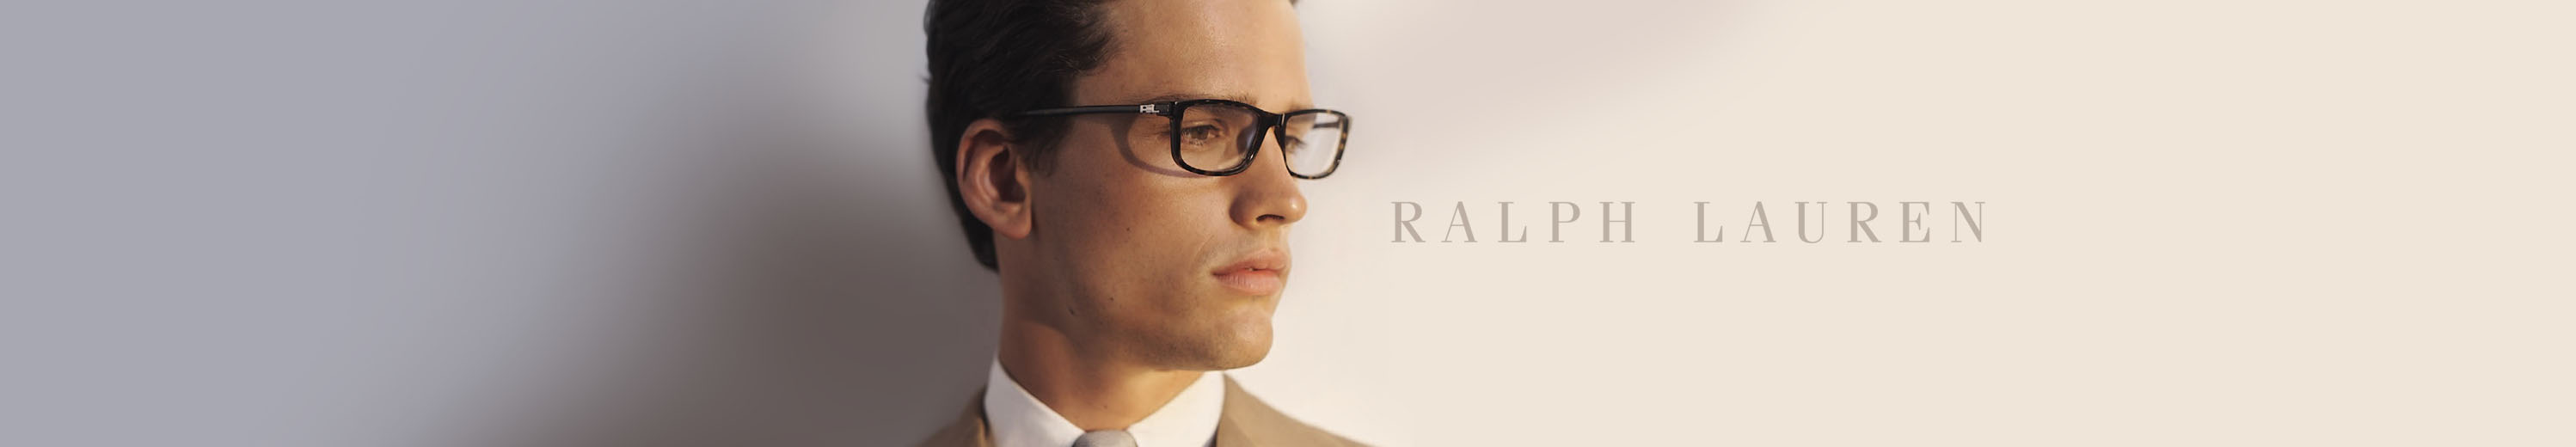 Ralph Lauren Eyeglasses for Men